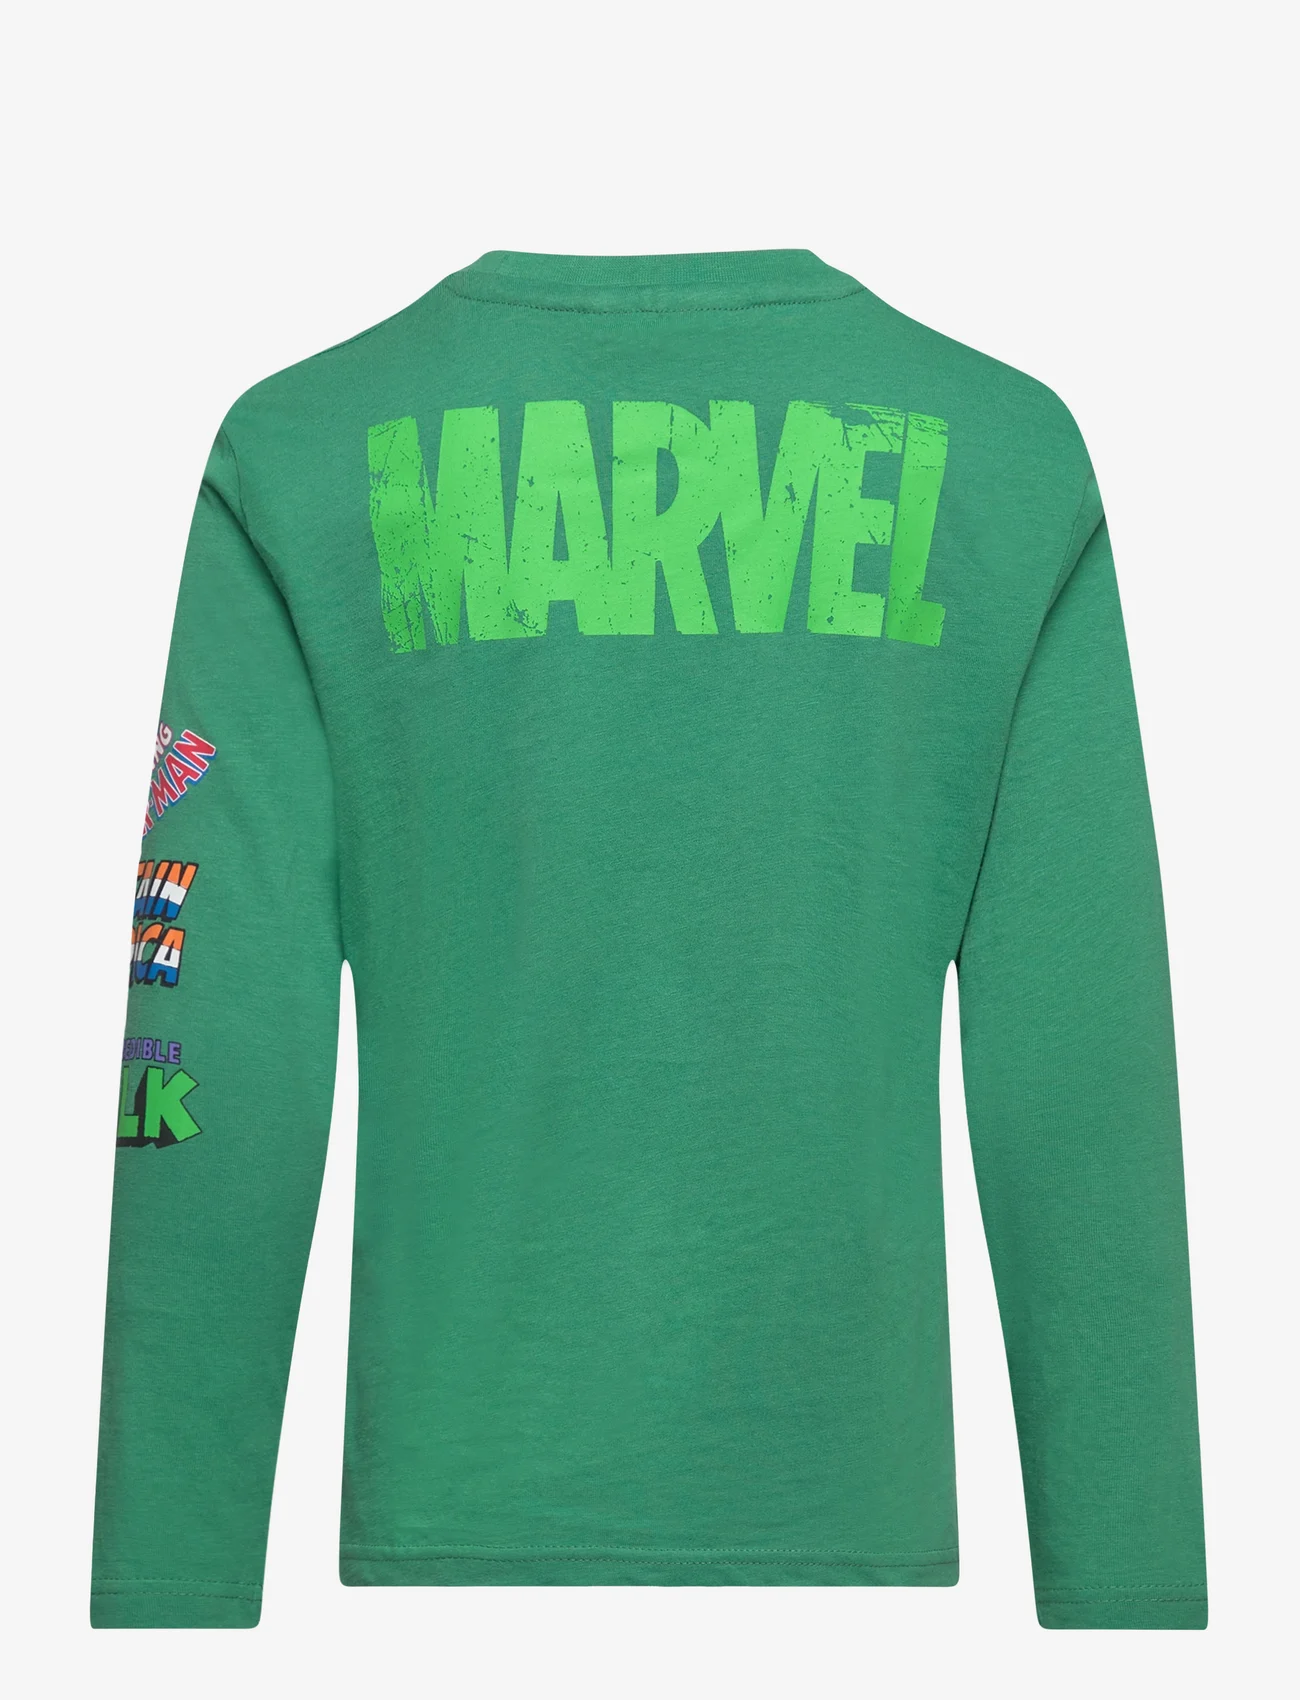 Marvel - LONG-SLEEVED T-SHIRT - langærmede t-shirts - green - 1